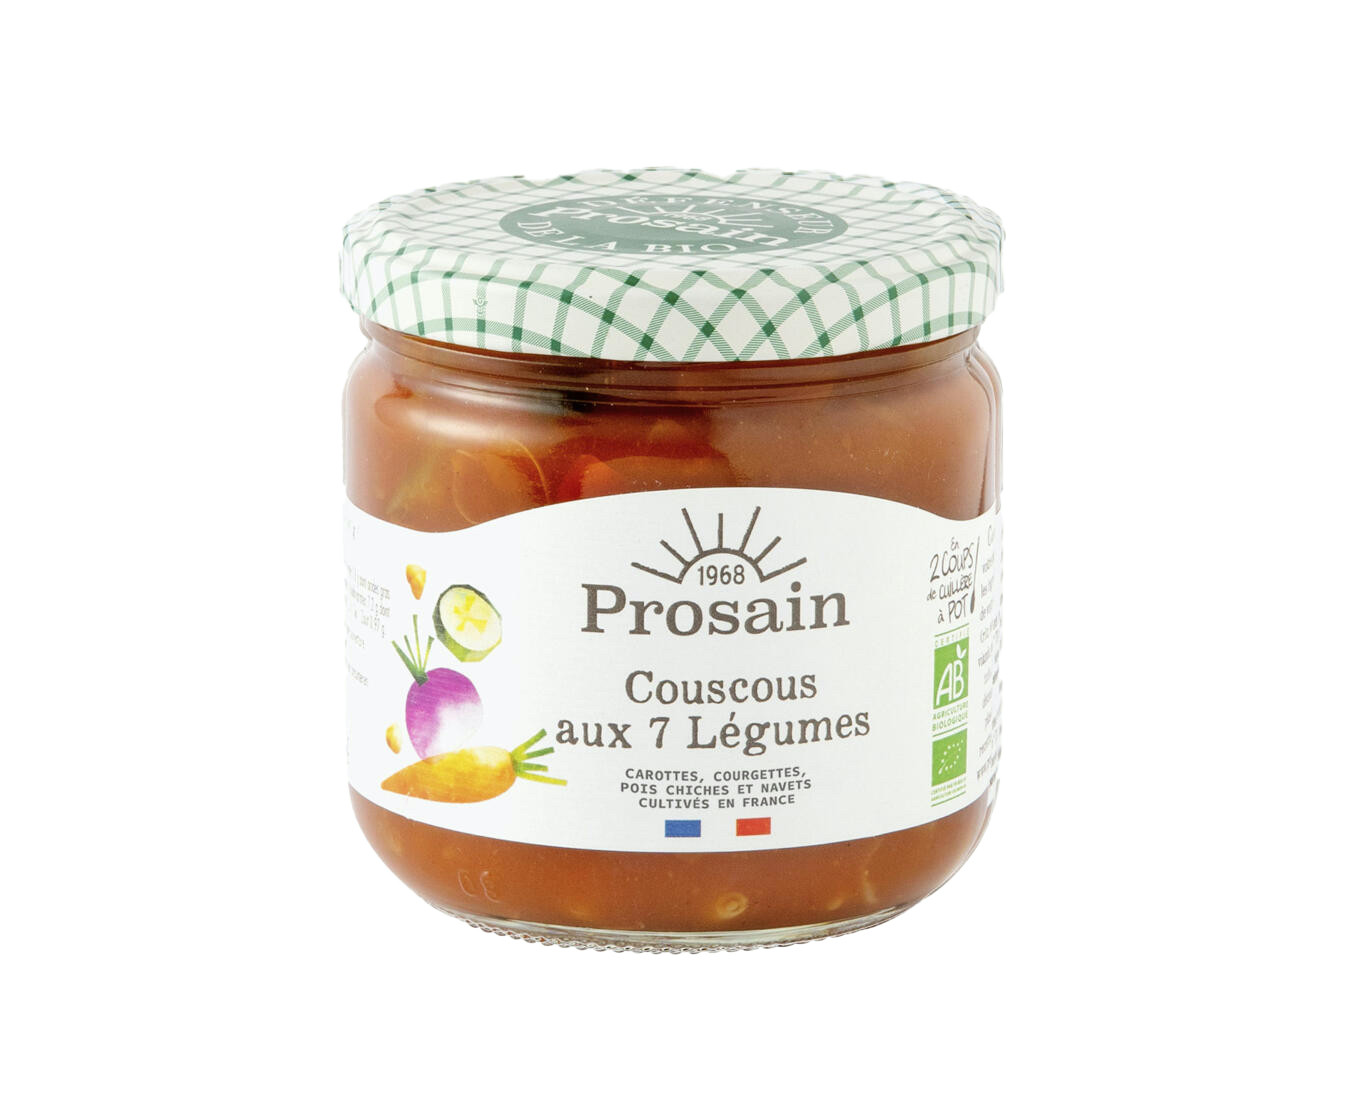 Soupe Rustique Bio 420g Prosain - Le Colibri, boutique en ligne